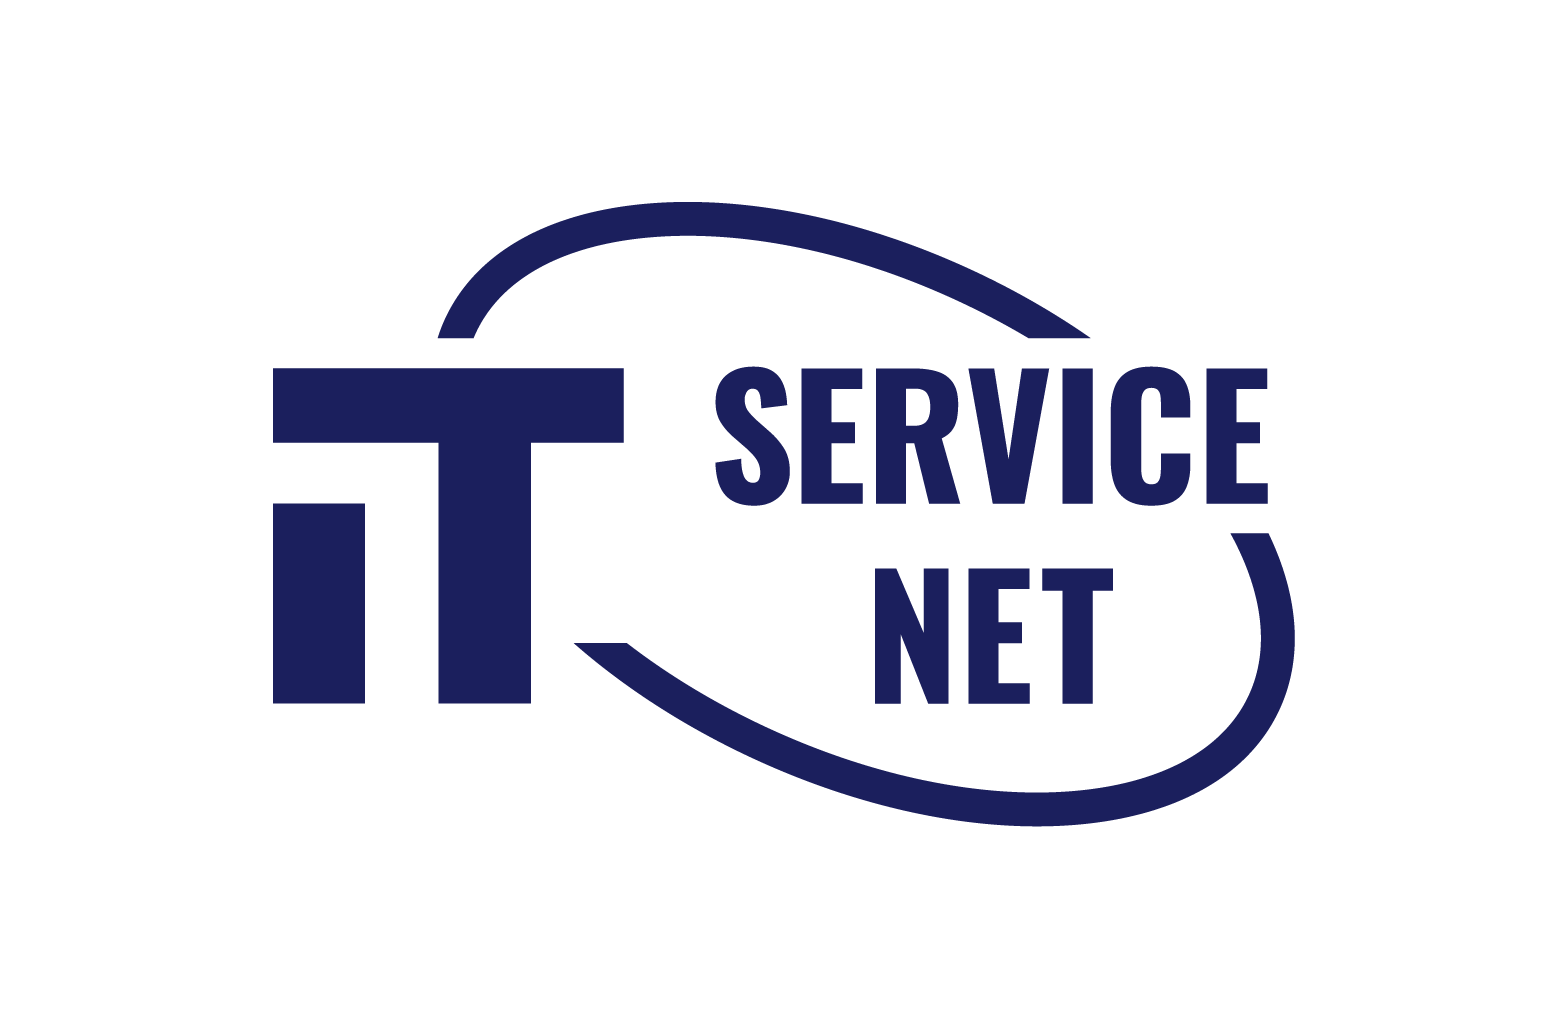 IT-Service-Net bundesweite IT- Dienste | Freie-Pressemitteilungen.de